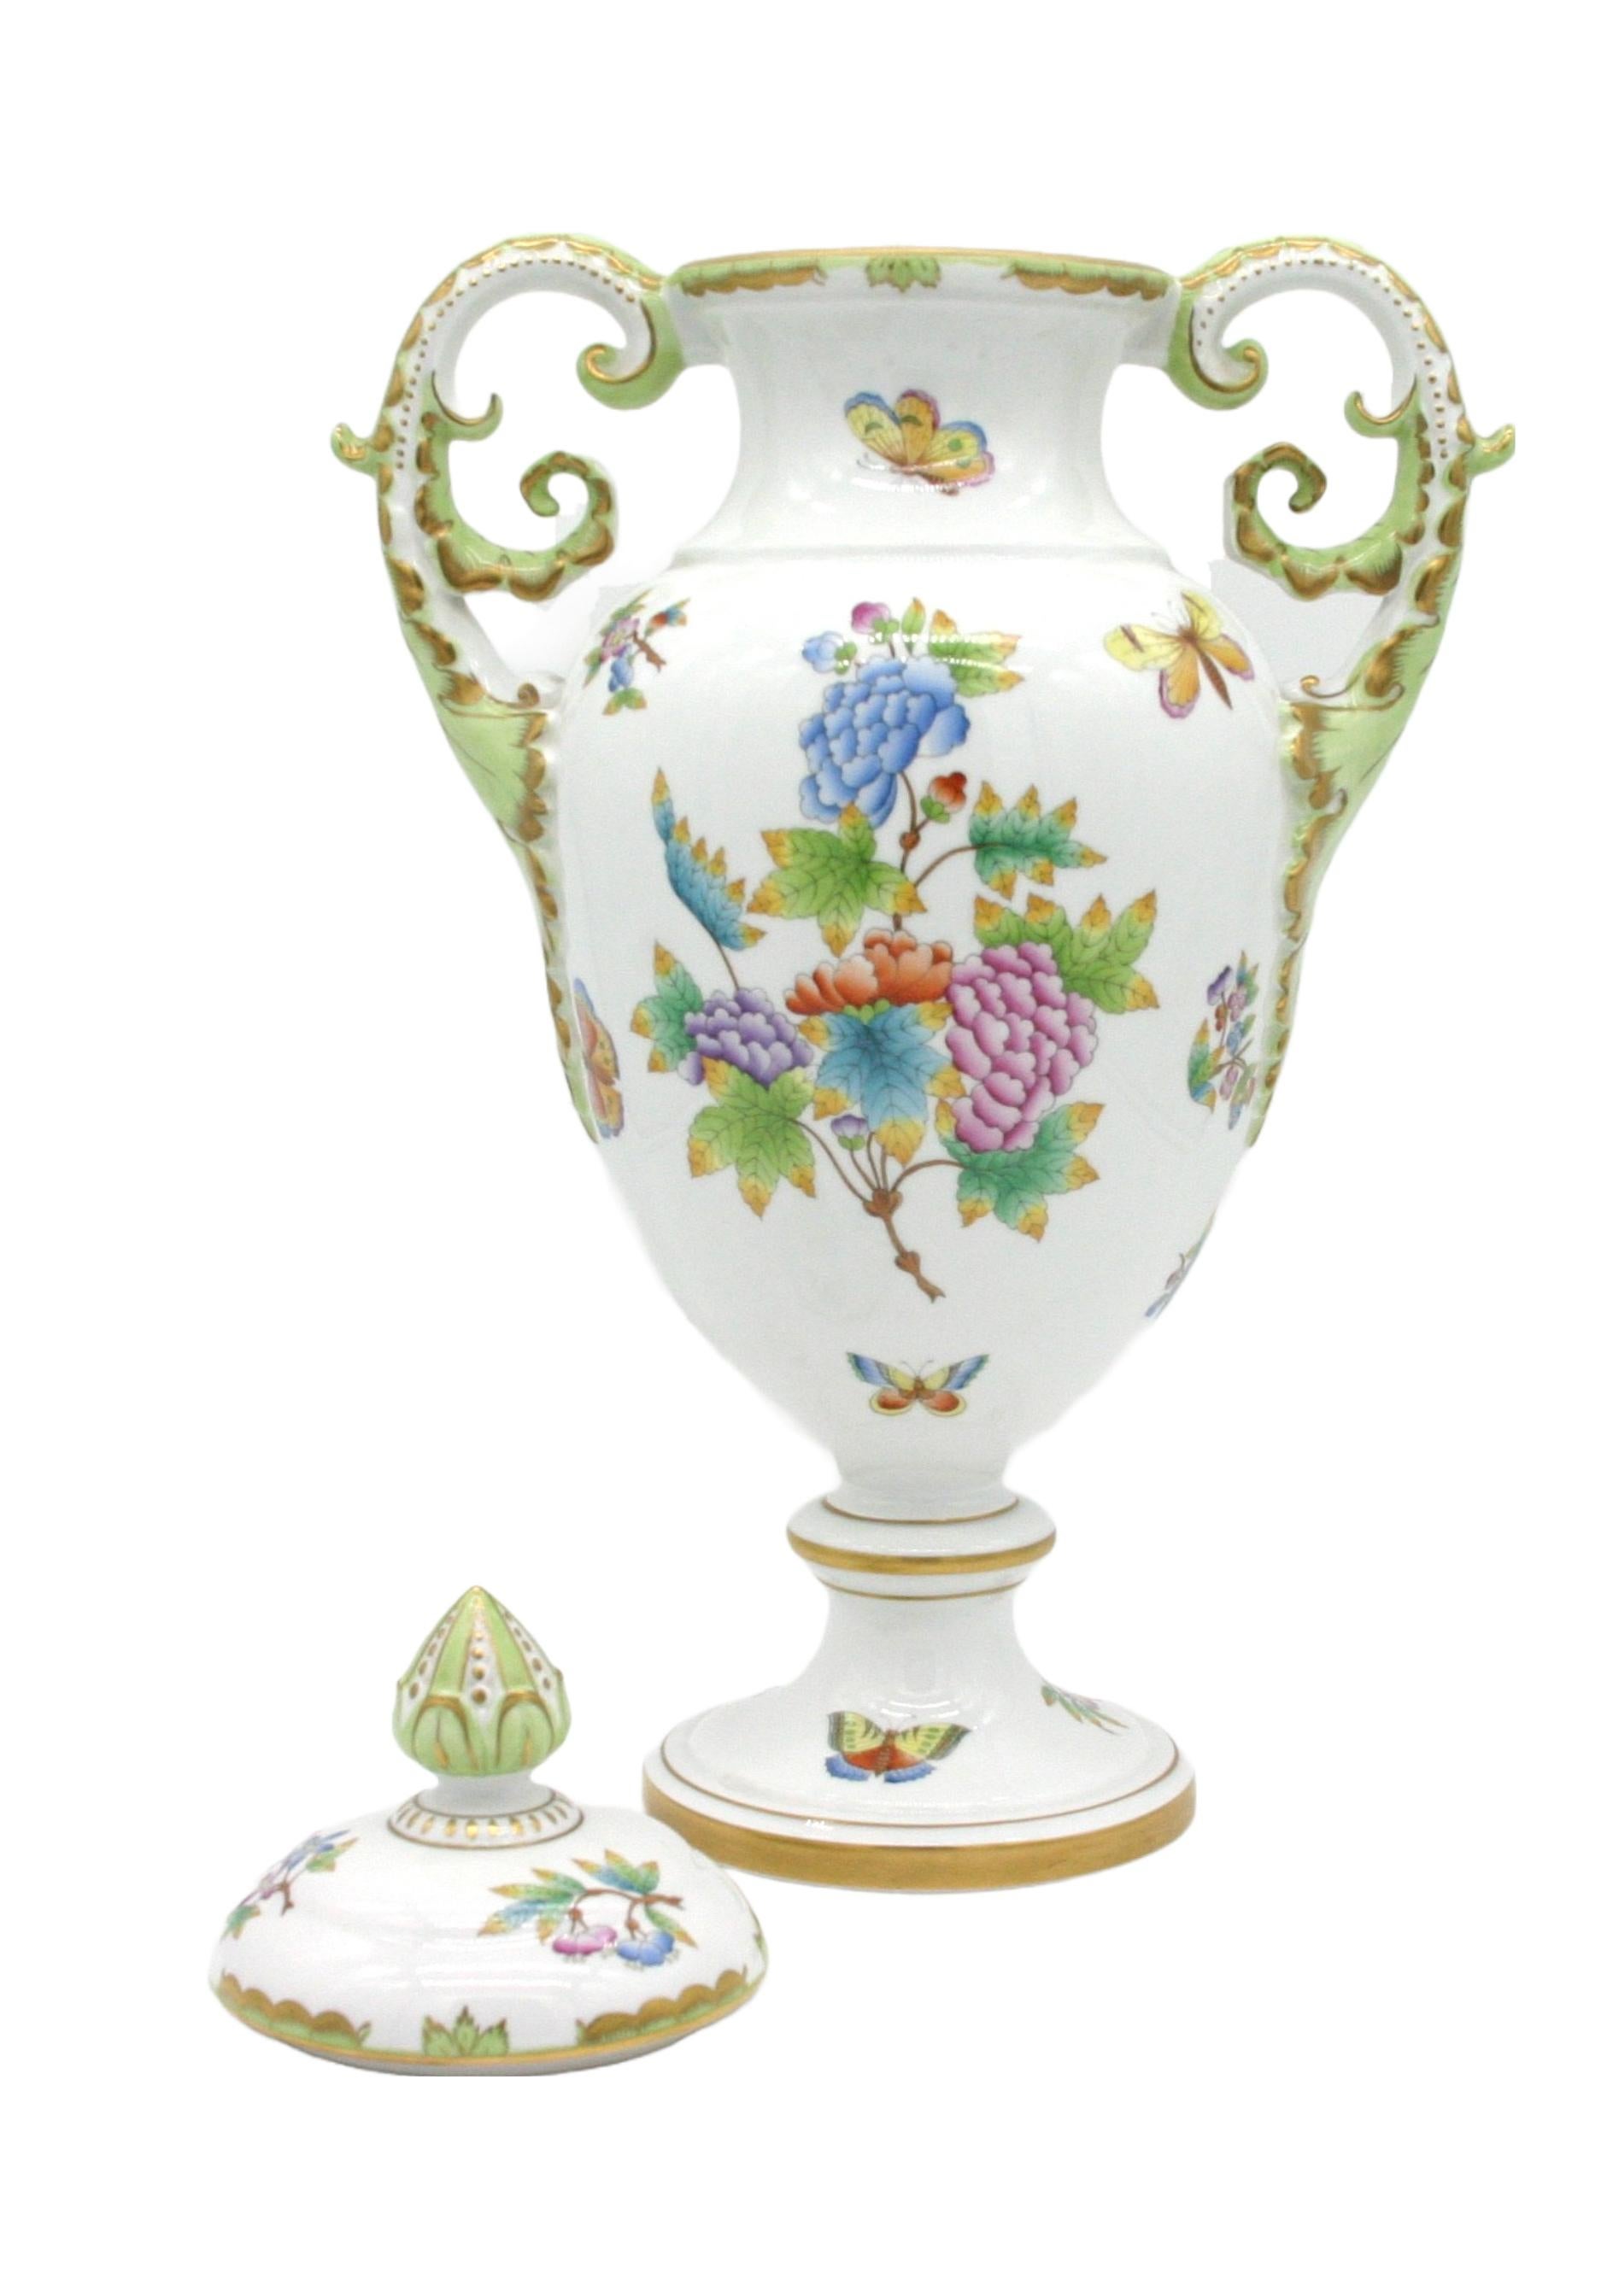 20th Century Large Herend Porcelain Decorative Vase / Urn For Sale